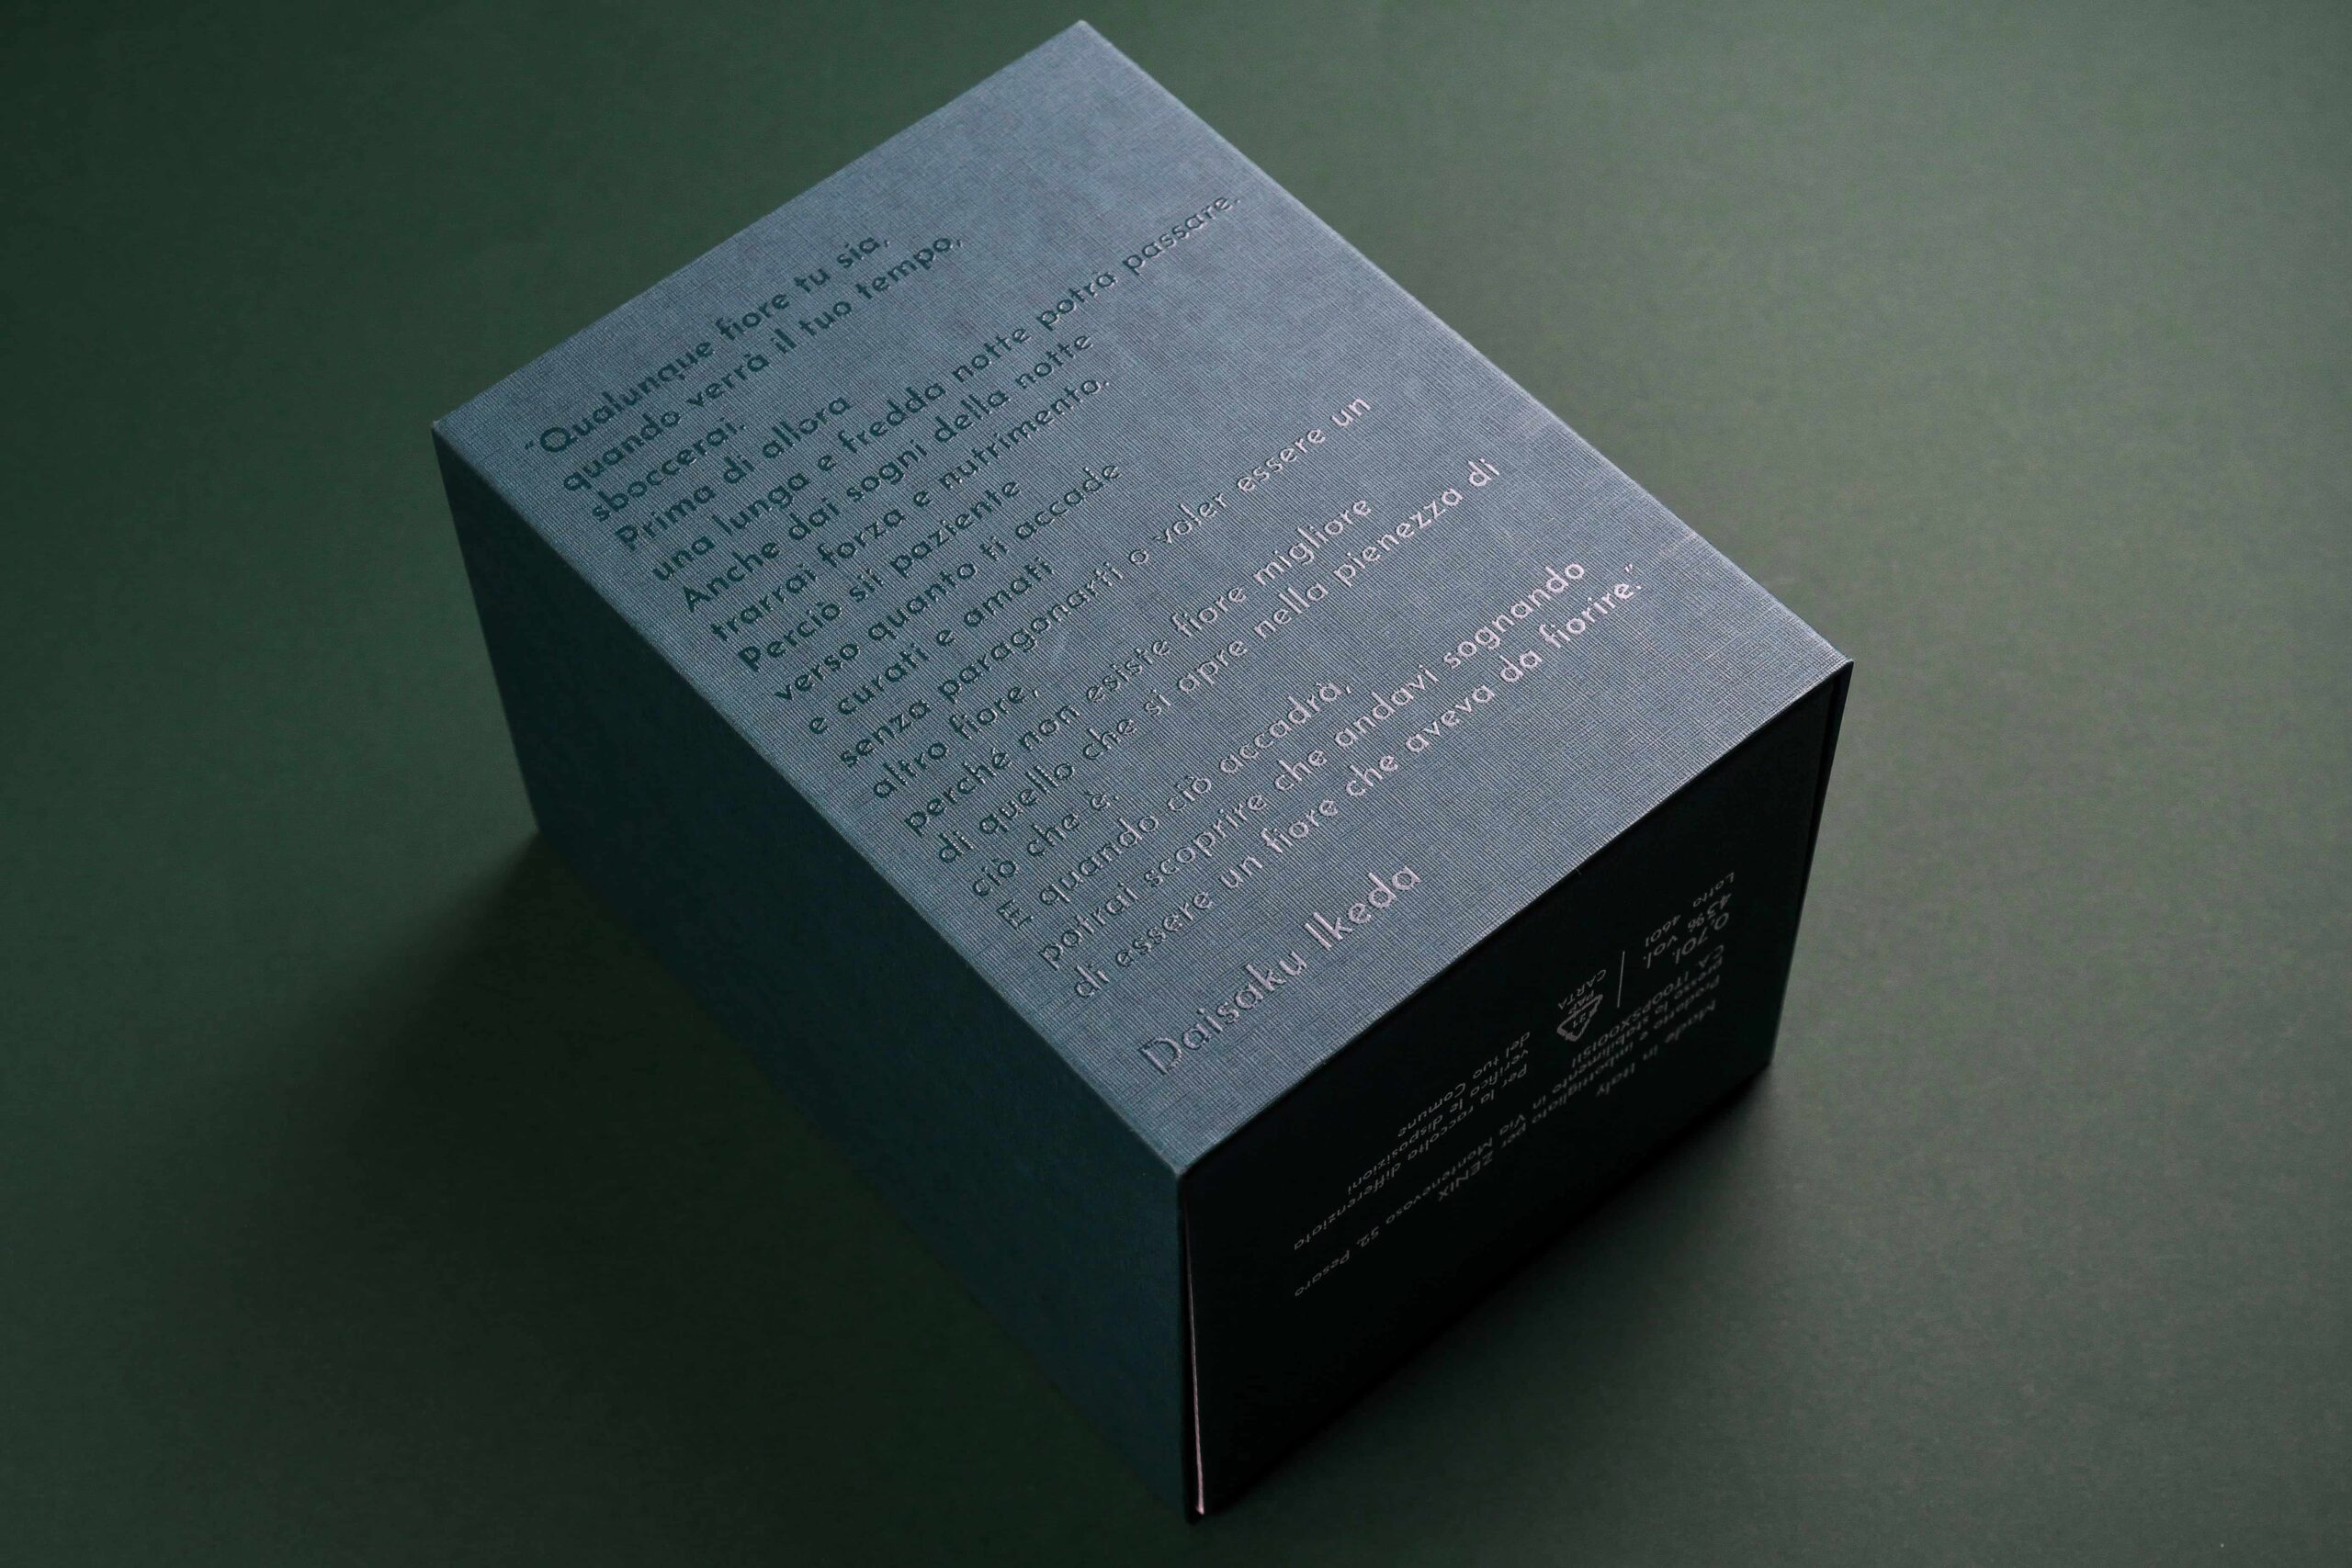 Dettagli dei serigrafia UV su scatola KYO gin progetto di Valeria Plasmati